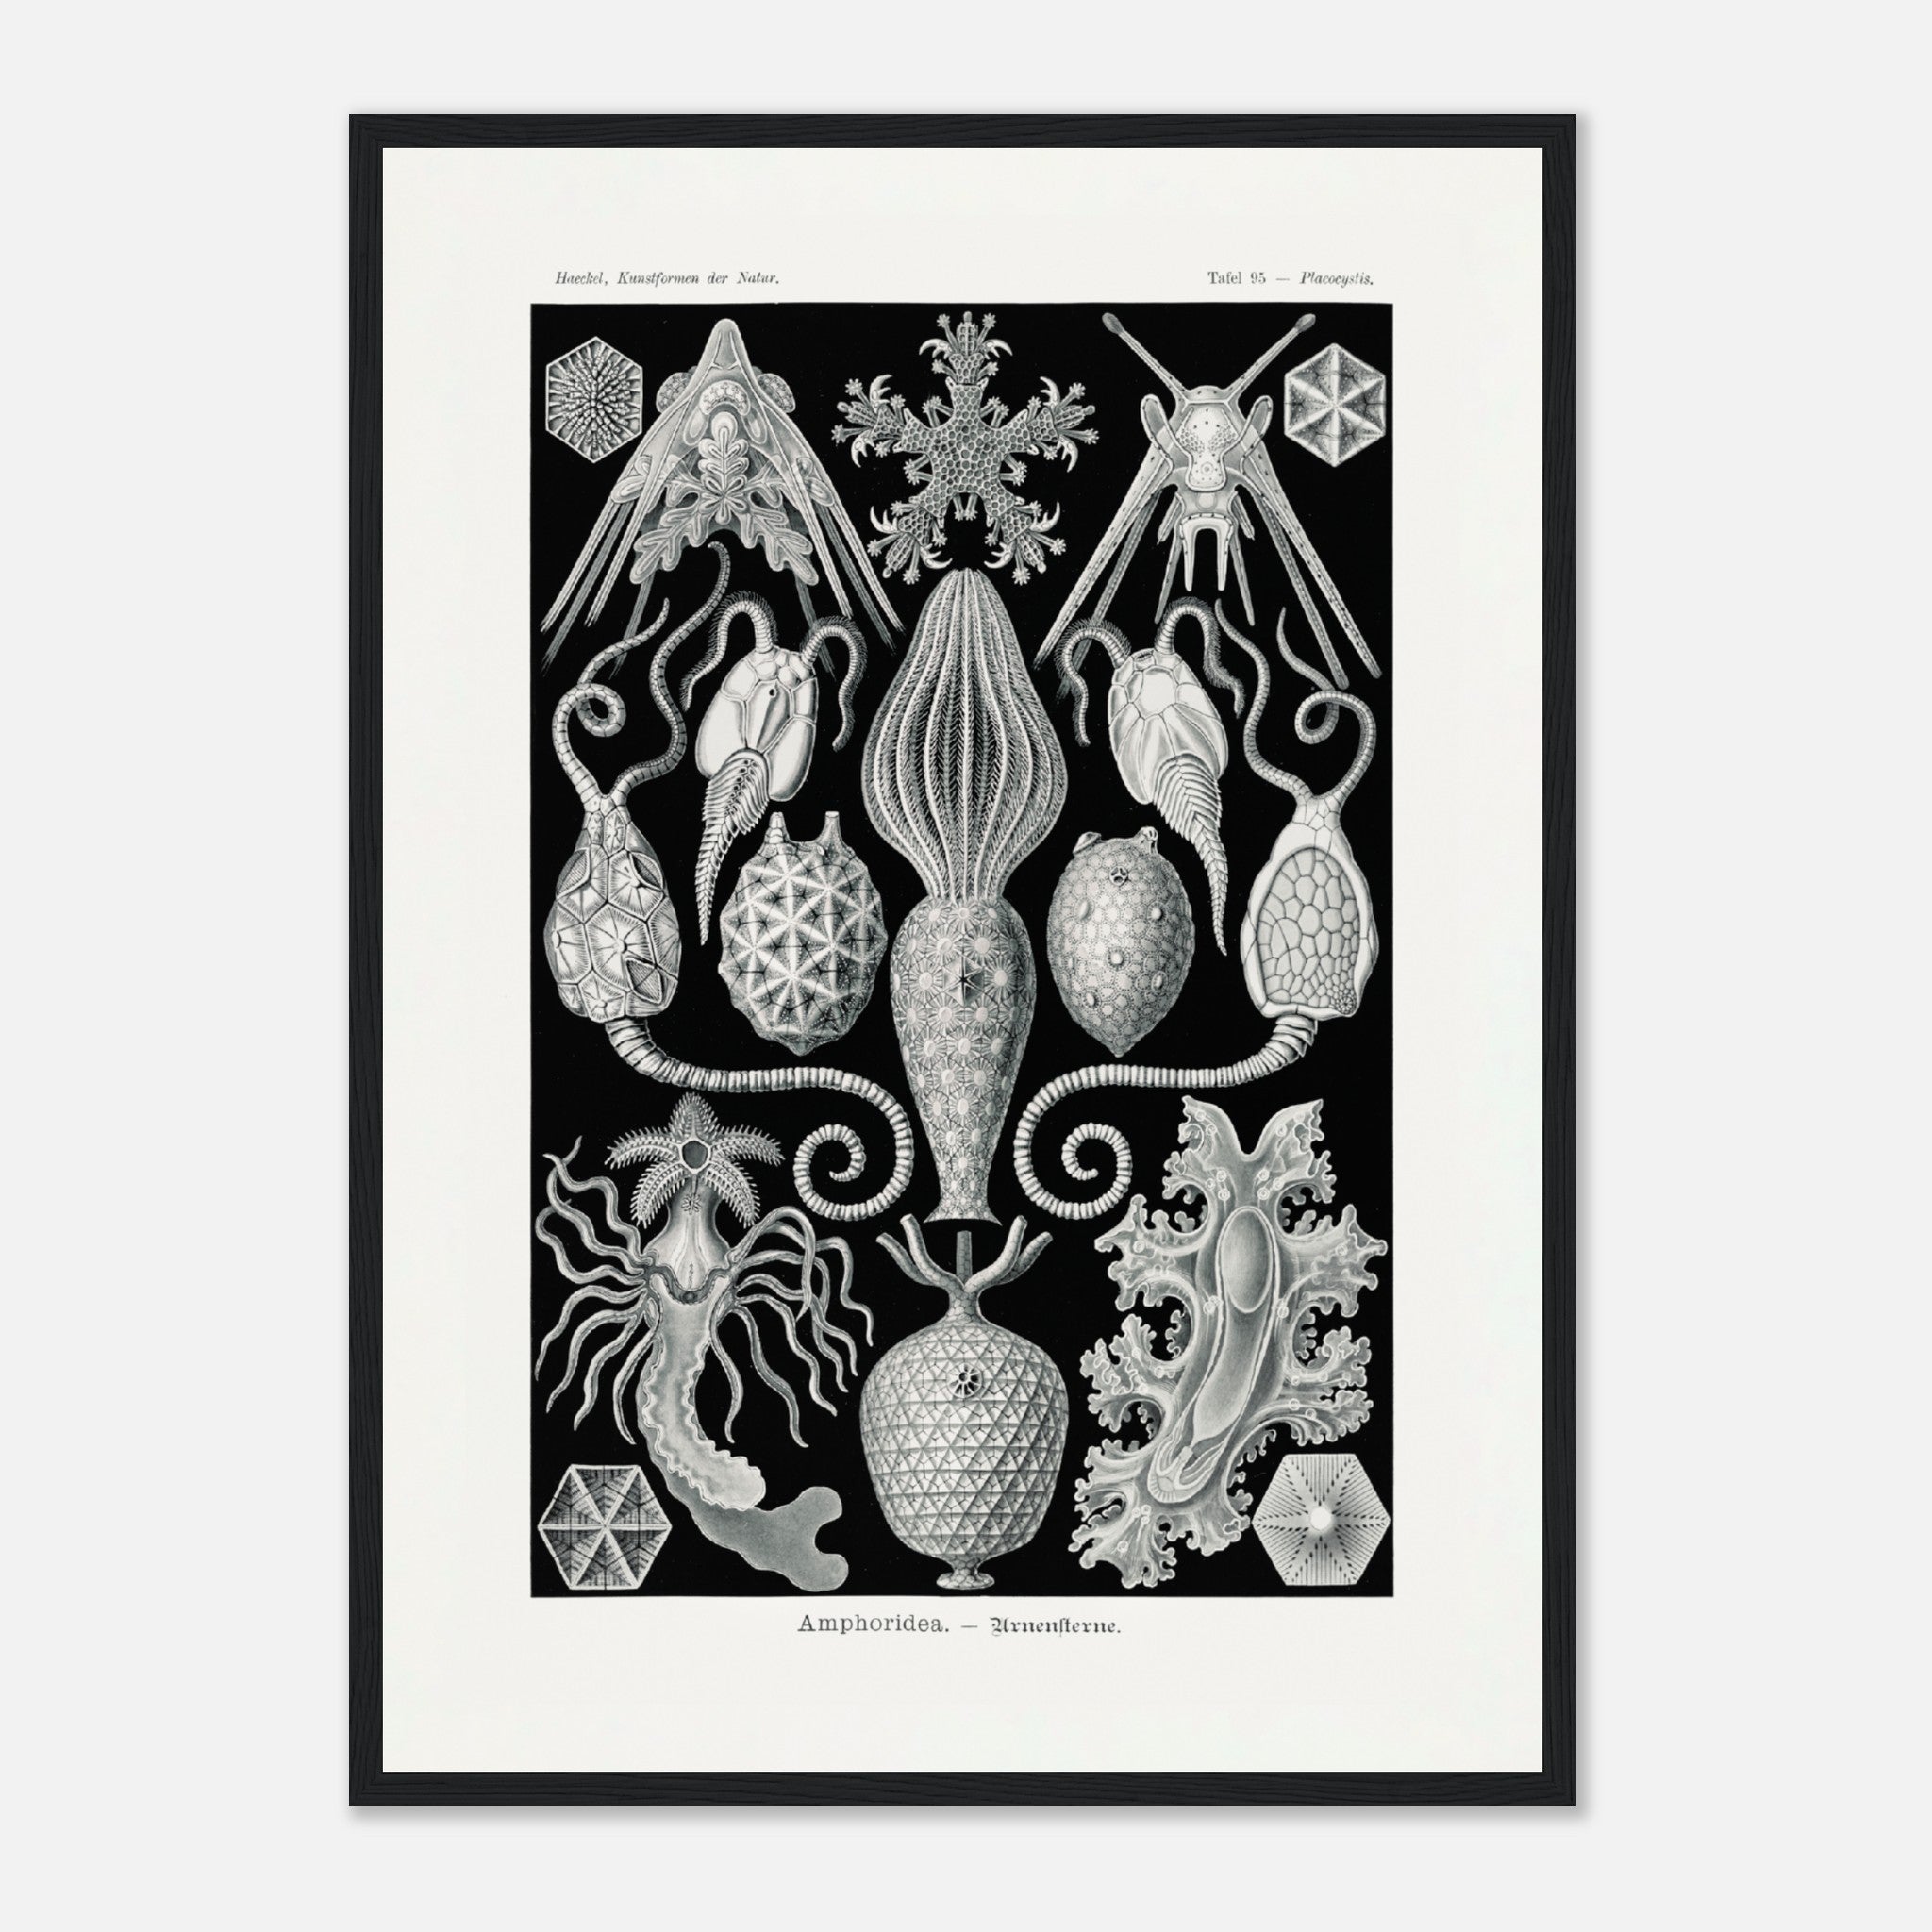 Amphoridea Urnensterne By Ernst Haeckel Poster